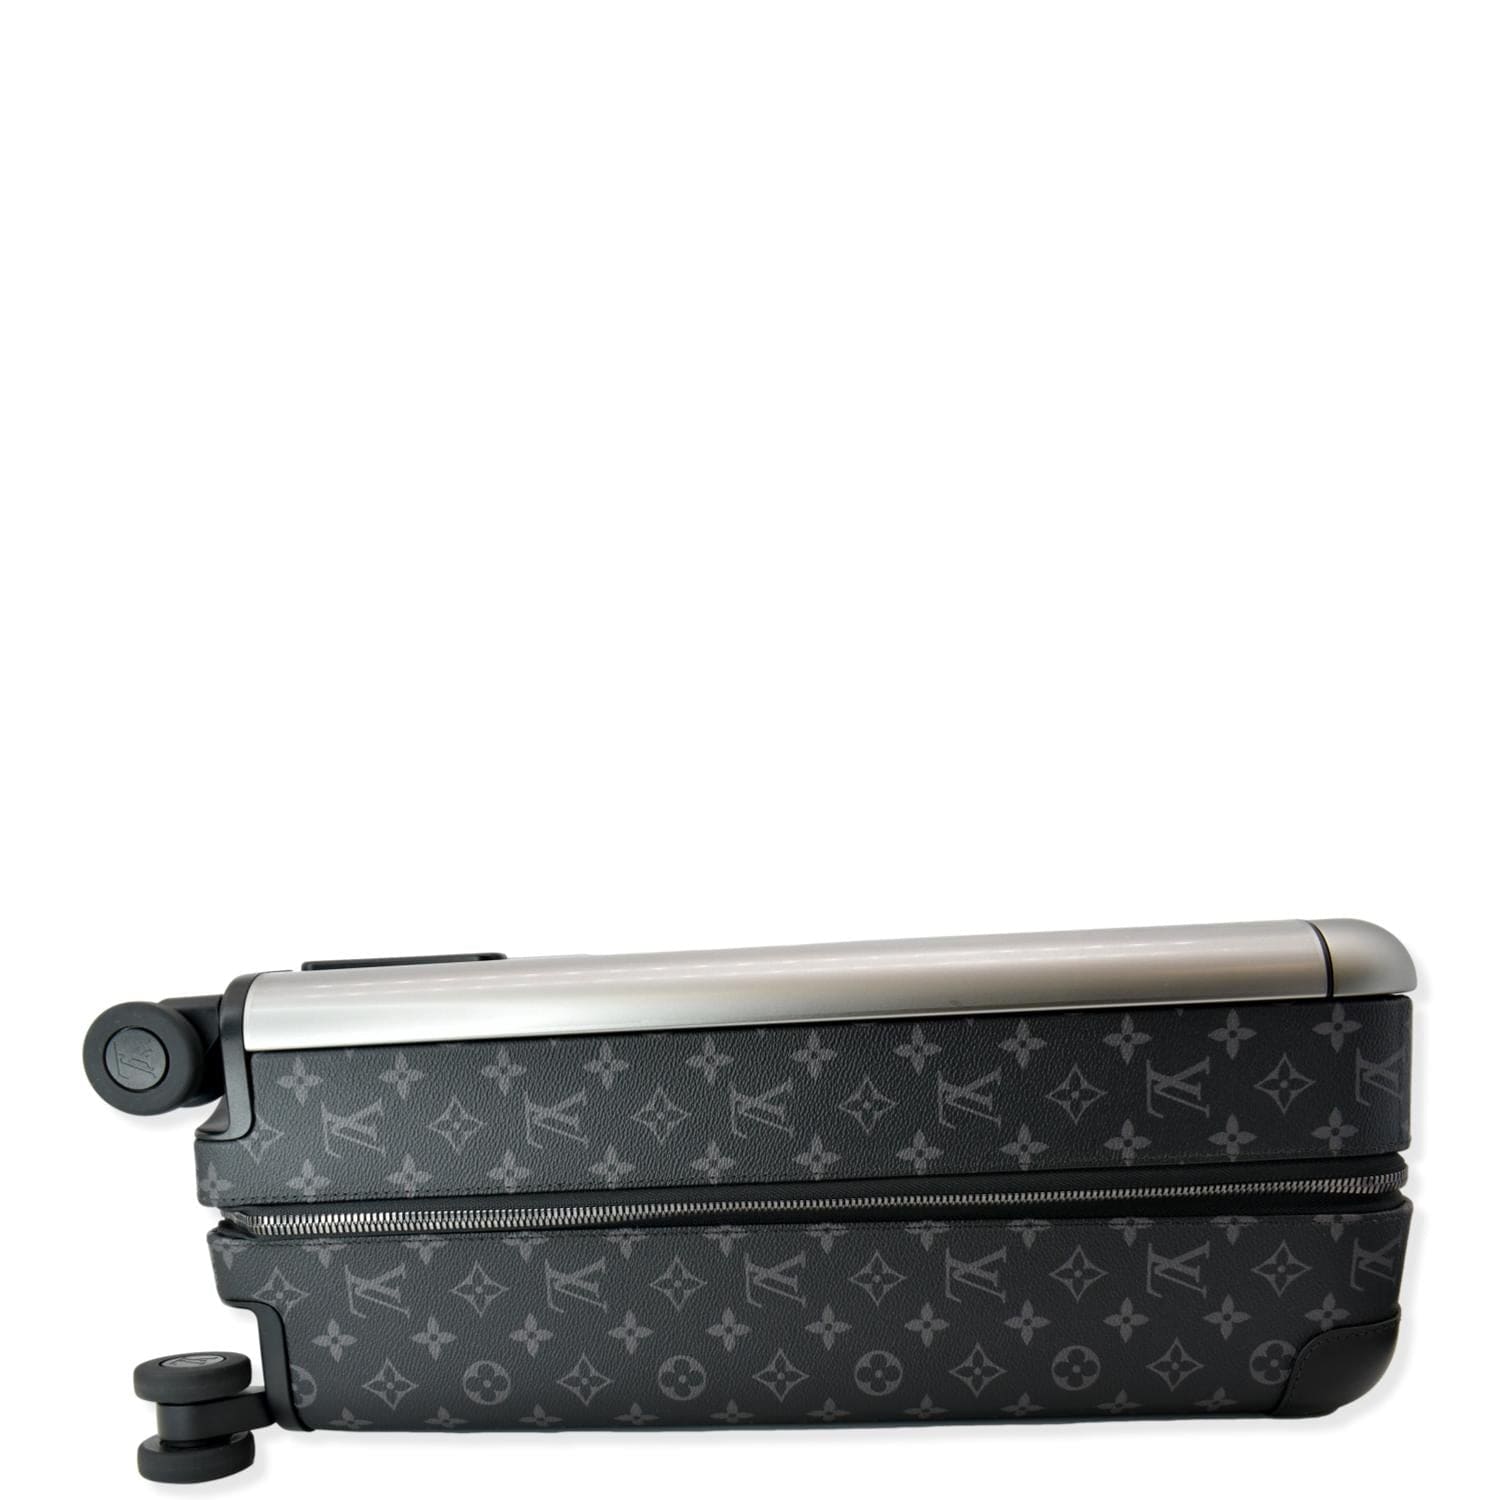 Louis Vuitton Horizon 55 Roller Luggage Carry On Black Monogram at 1stDibs